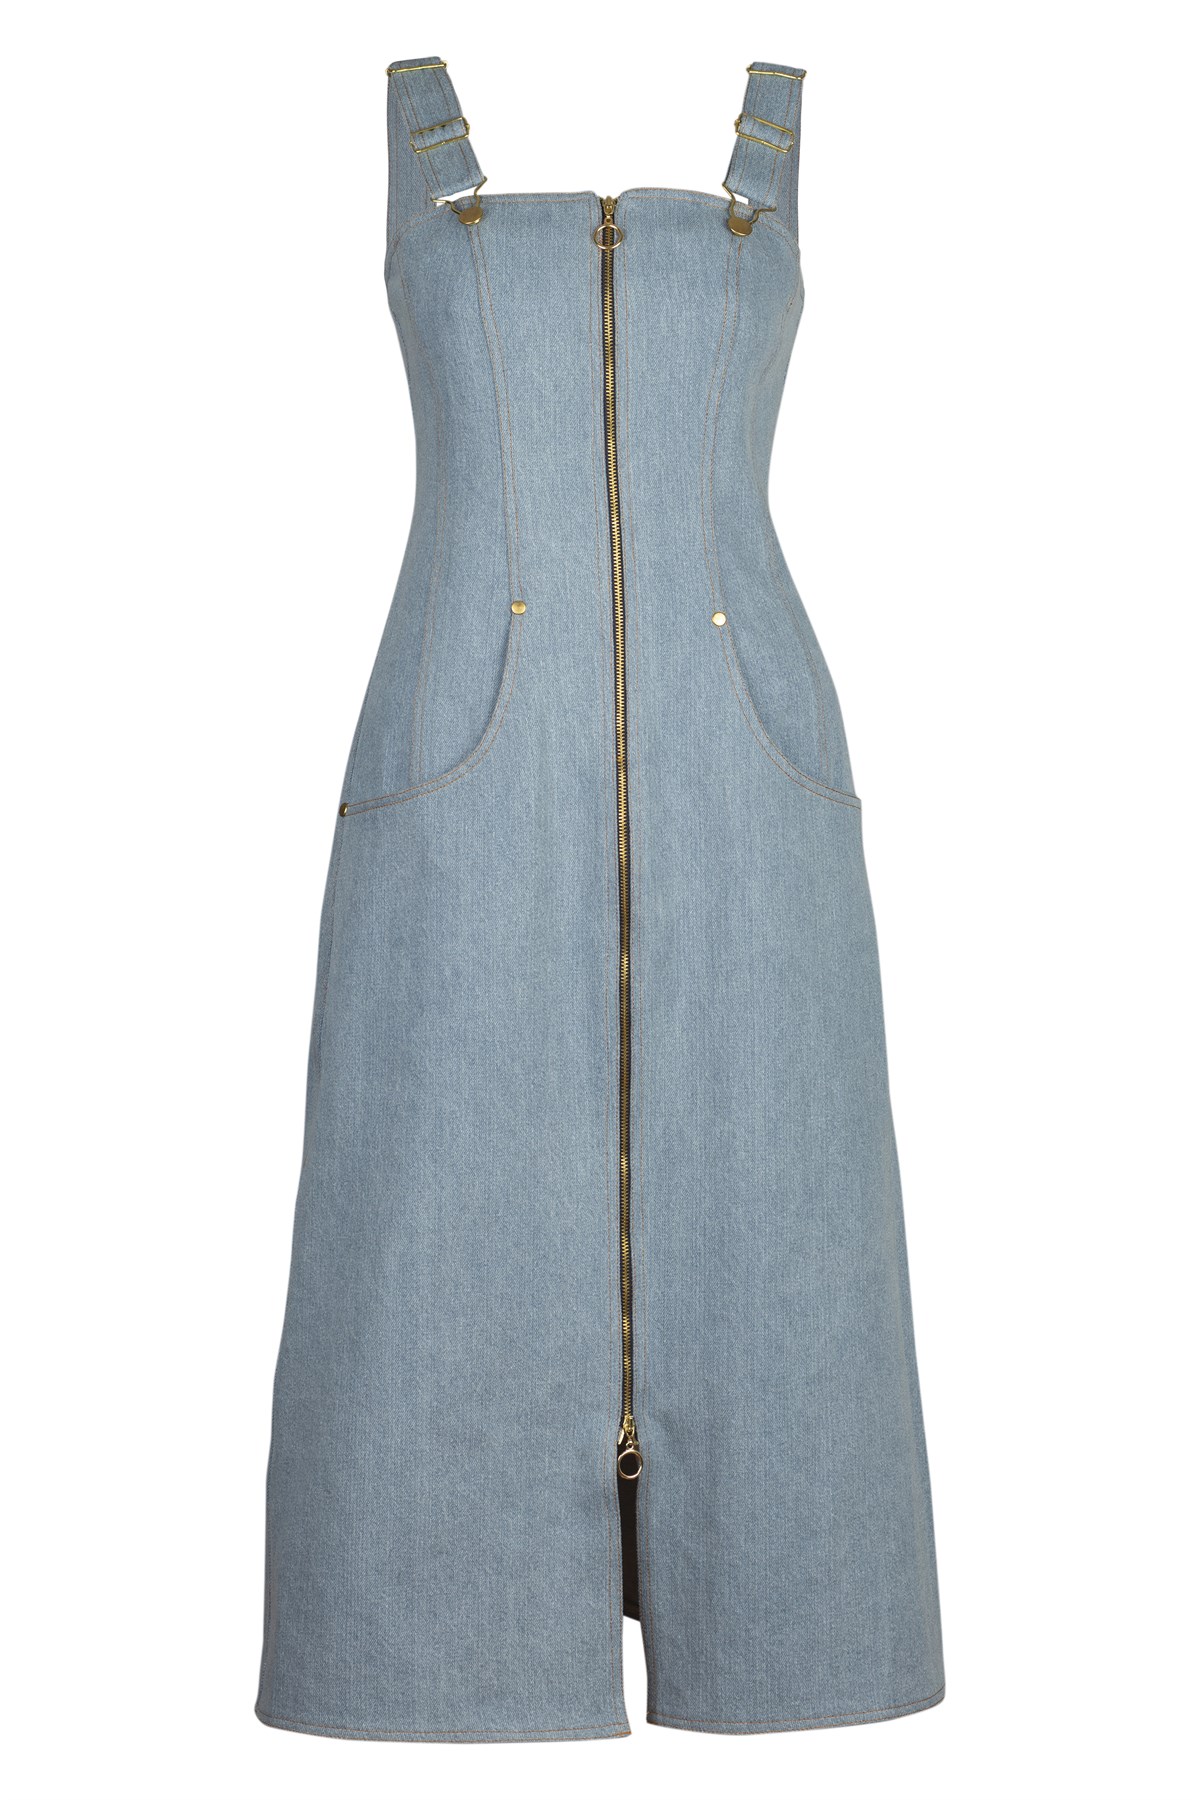 Cherry Elbise Açık Mavi - Askılı kot elbise | Elbise | Modalogy